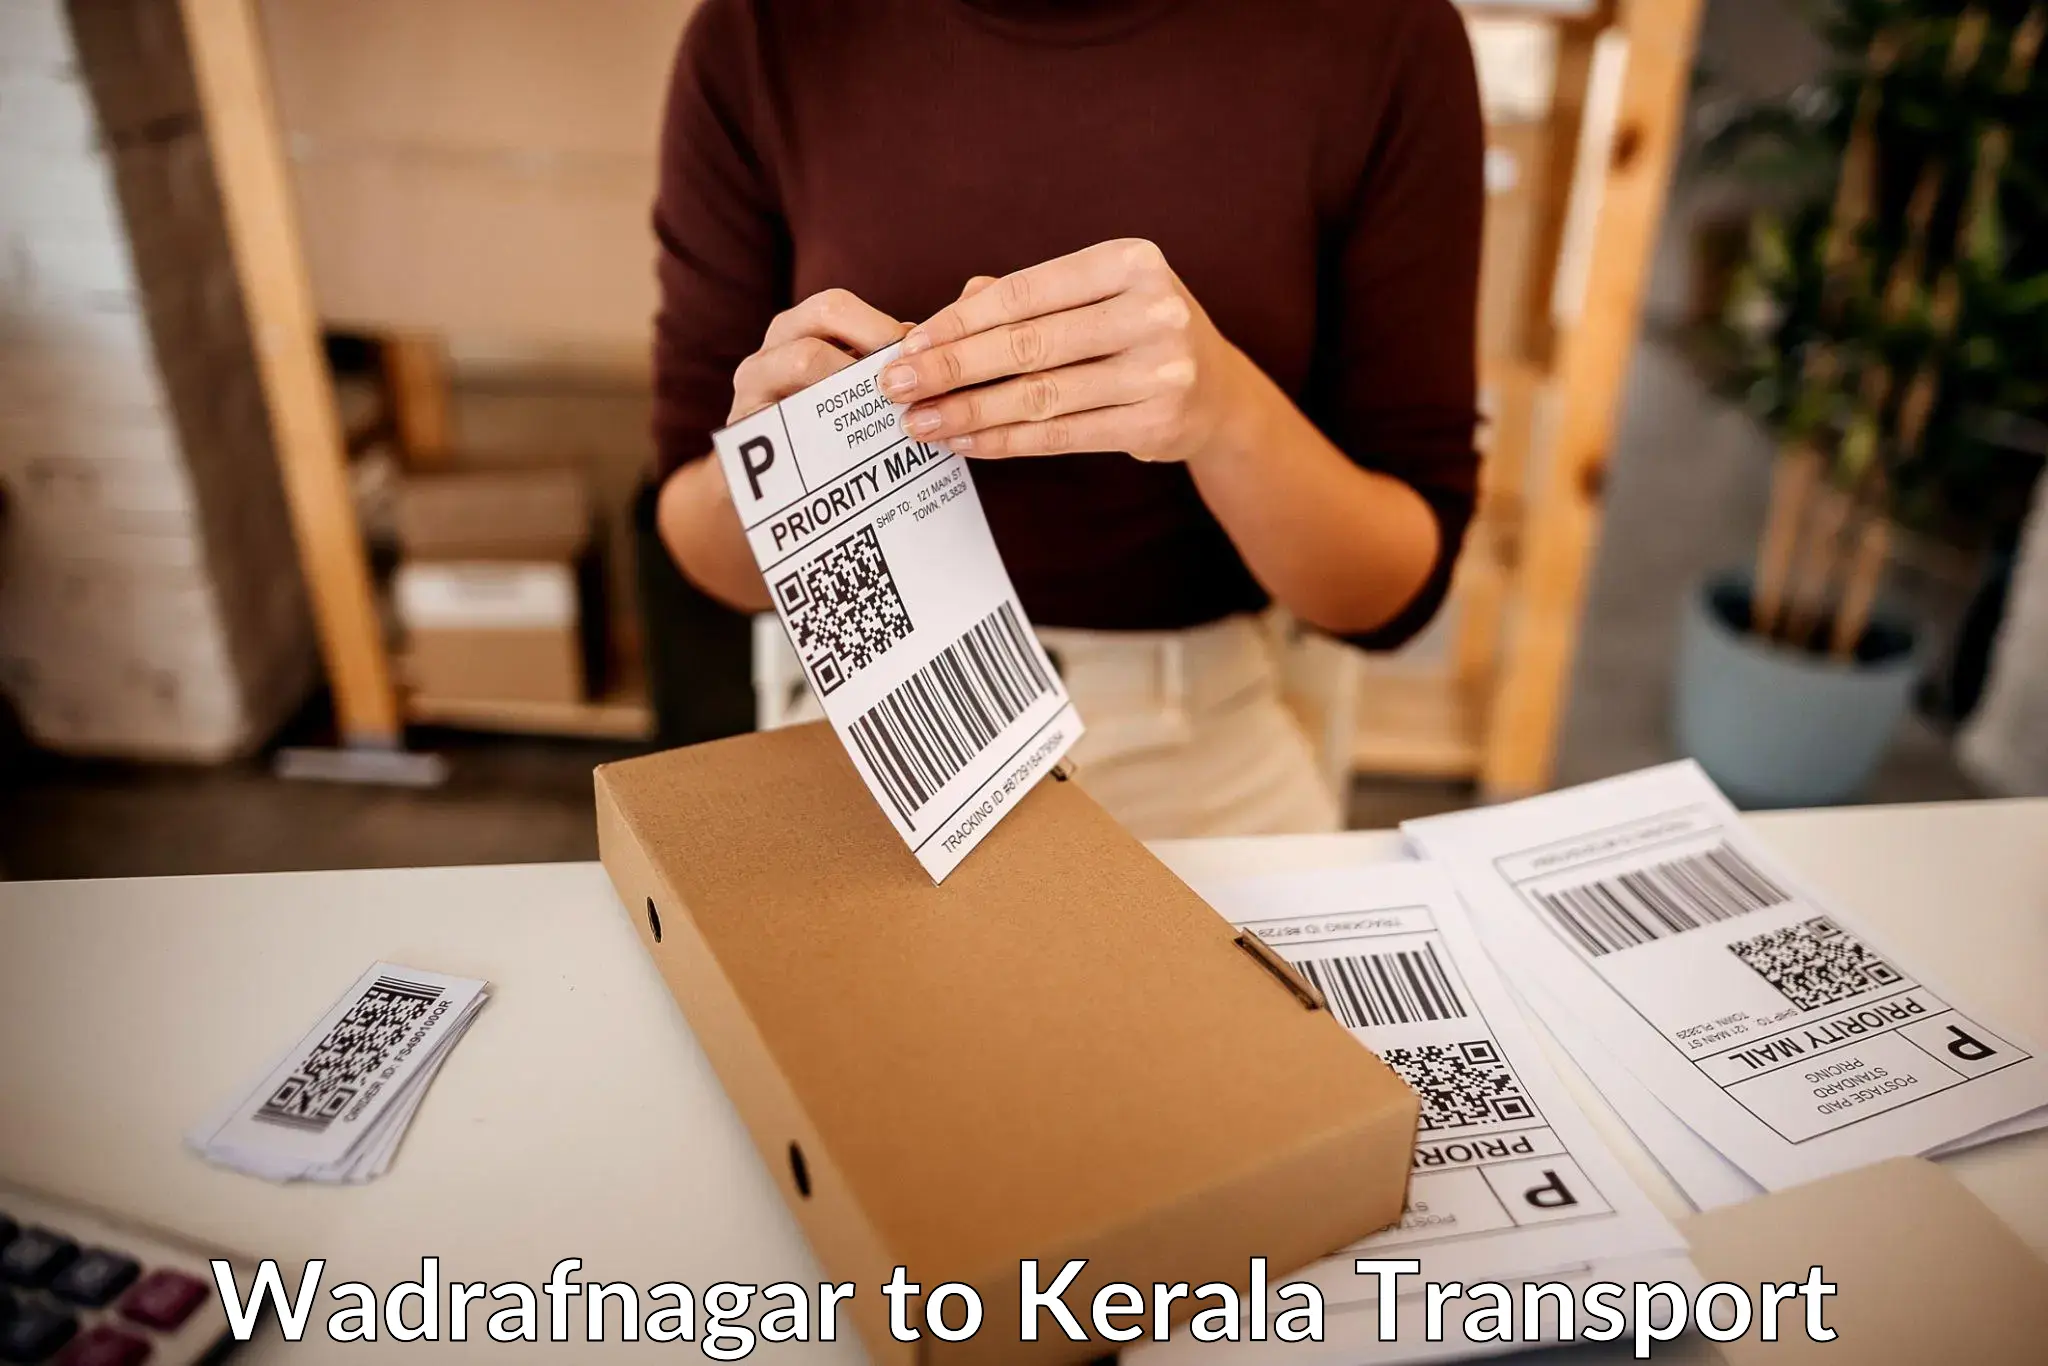 Transportation solution services Wadrafnagar to Kerala